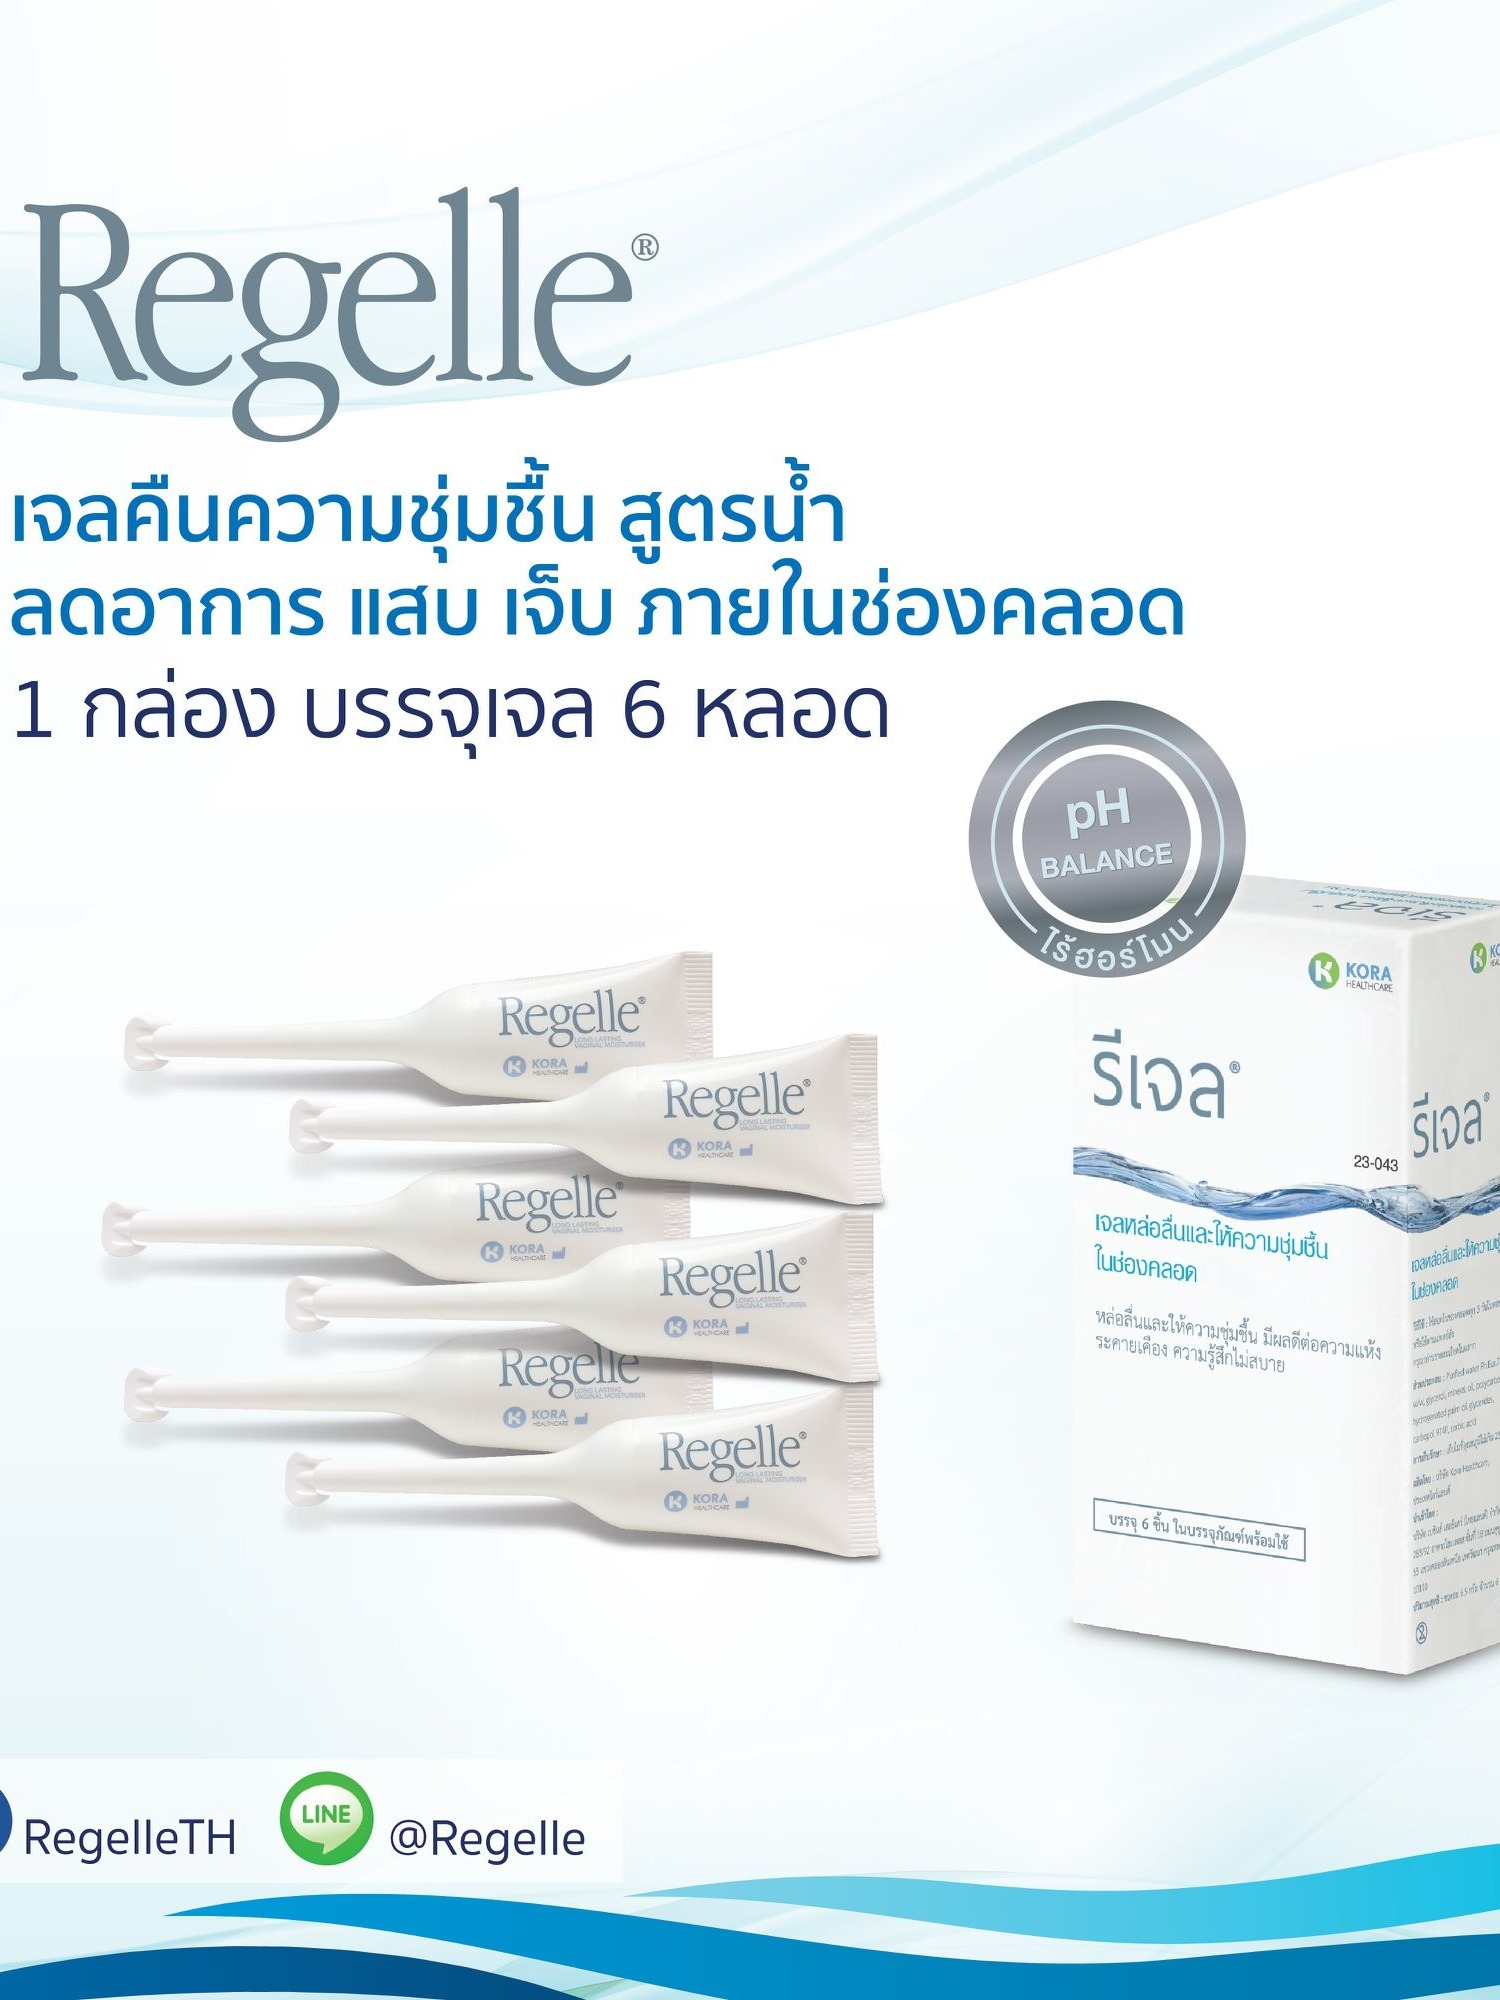 (กล่อง6ชิ้น)  REGELLE รีเจล เจลหล่อลื่น เพิ่มความชุ่มชื้นให้ช่องคลอด ลดอาการ แสบ เจ็บ ในช่องคลอด